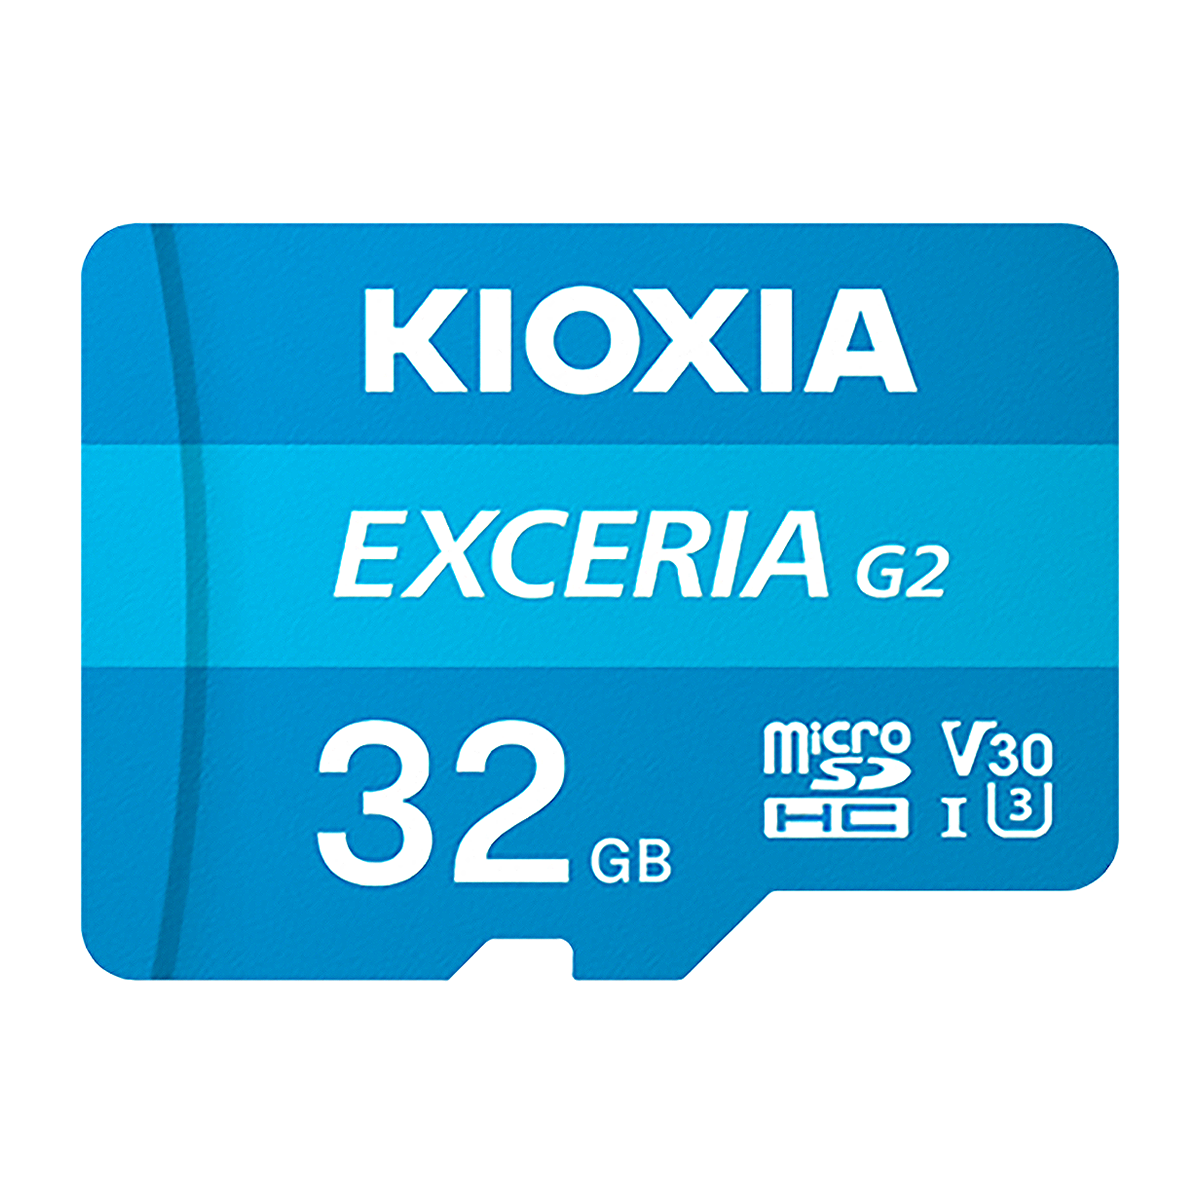 کارت حافظه microSDHC کیوکسیا مدل EXCERIA G2 کلاس 10 استاندارد UHS-I سرعت 100MBps ظرفیت 32 گیگابایت